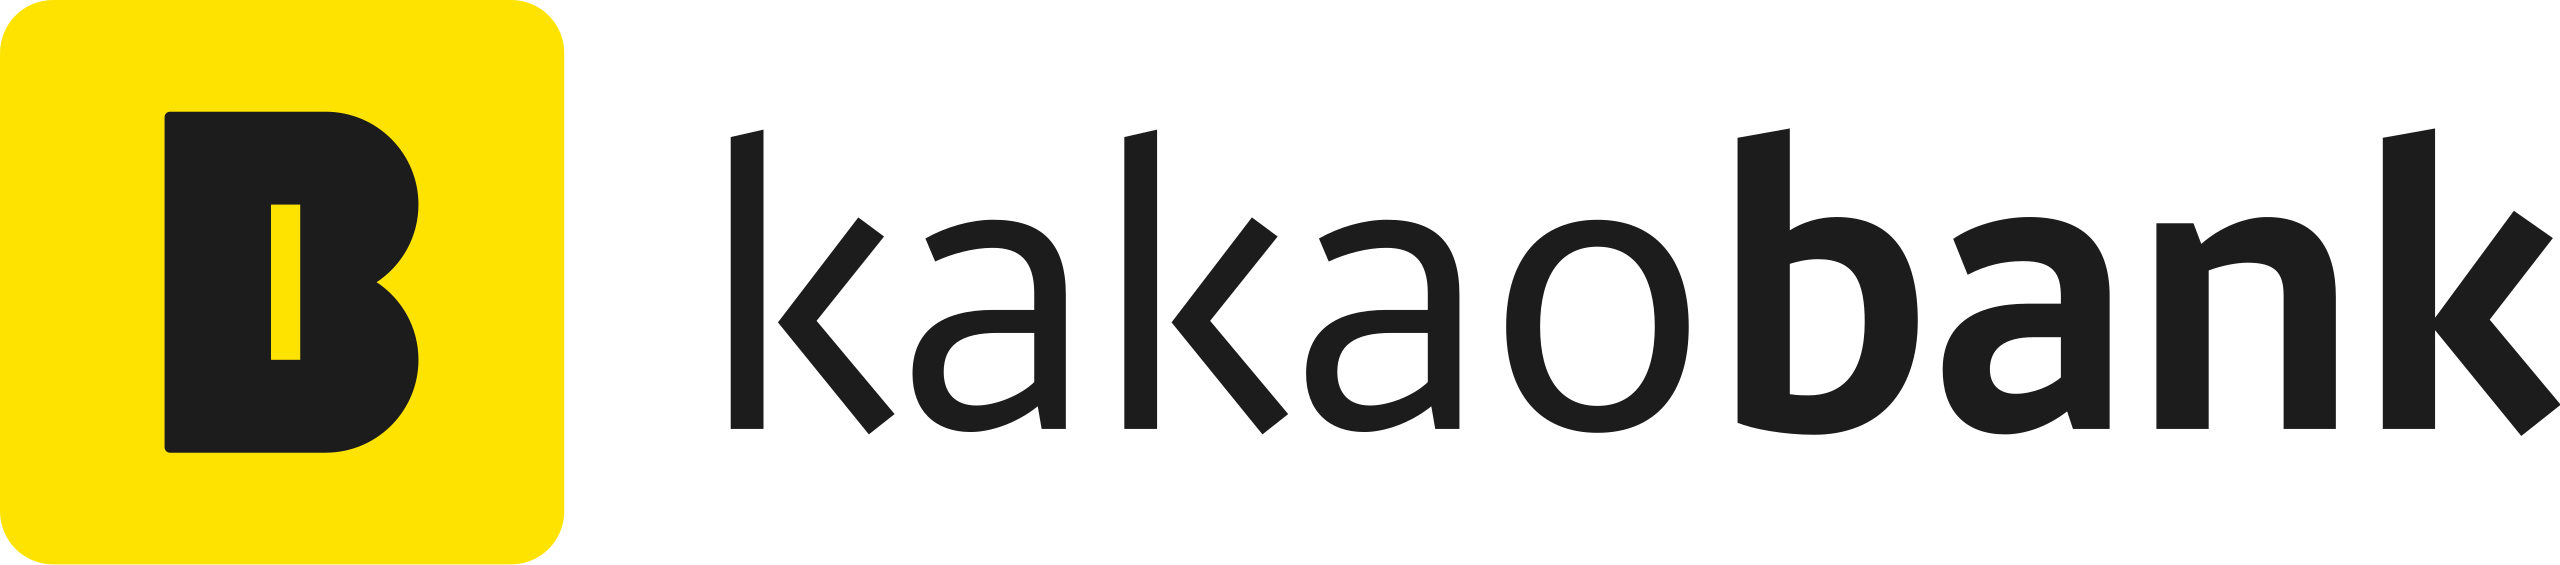 KakaoBank_logo.svg